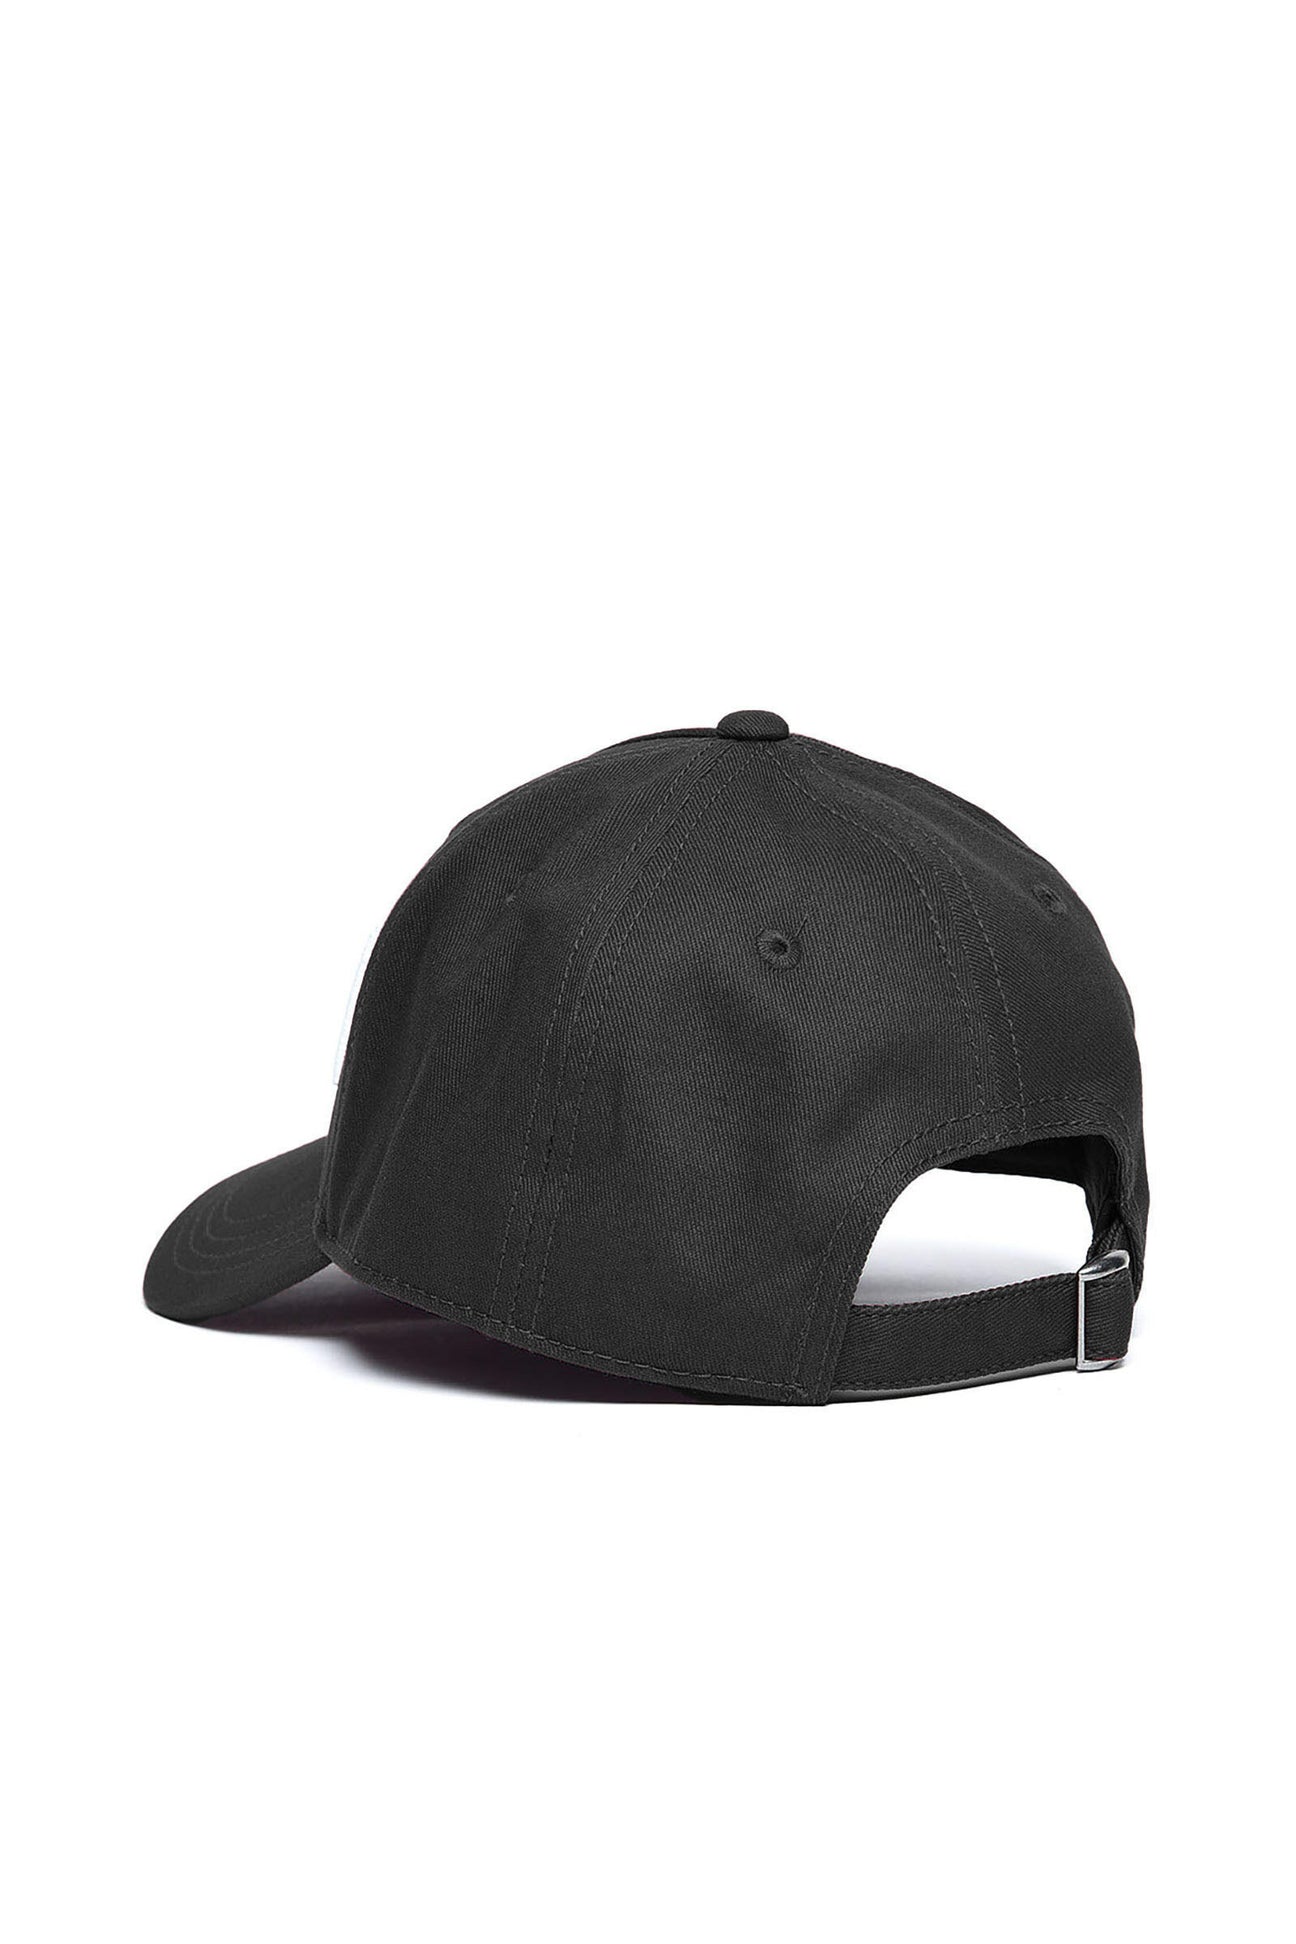 Black gabardine baseball cap with logo Black gabardine baseball cap with logo